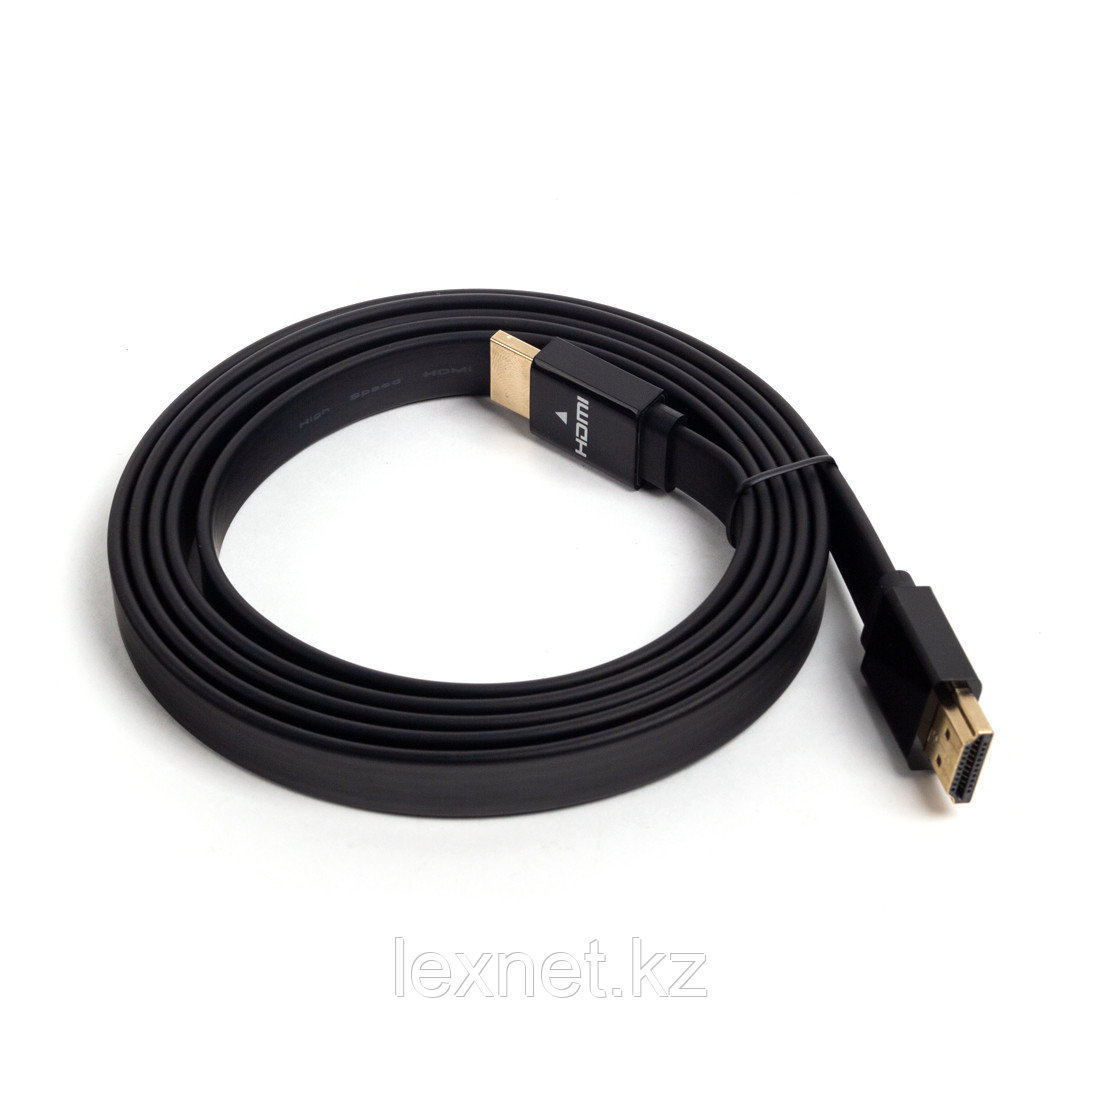 Интерфейсный кабель, SVC, HF0150-P, HDMI-HDMI, плоский, 30В, Чёрный, Пол. пакет, 1.5 м.